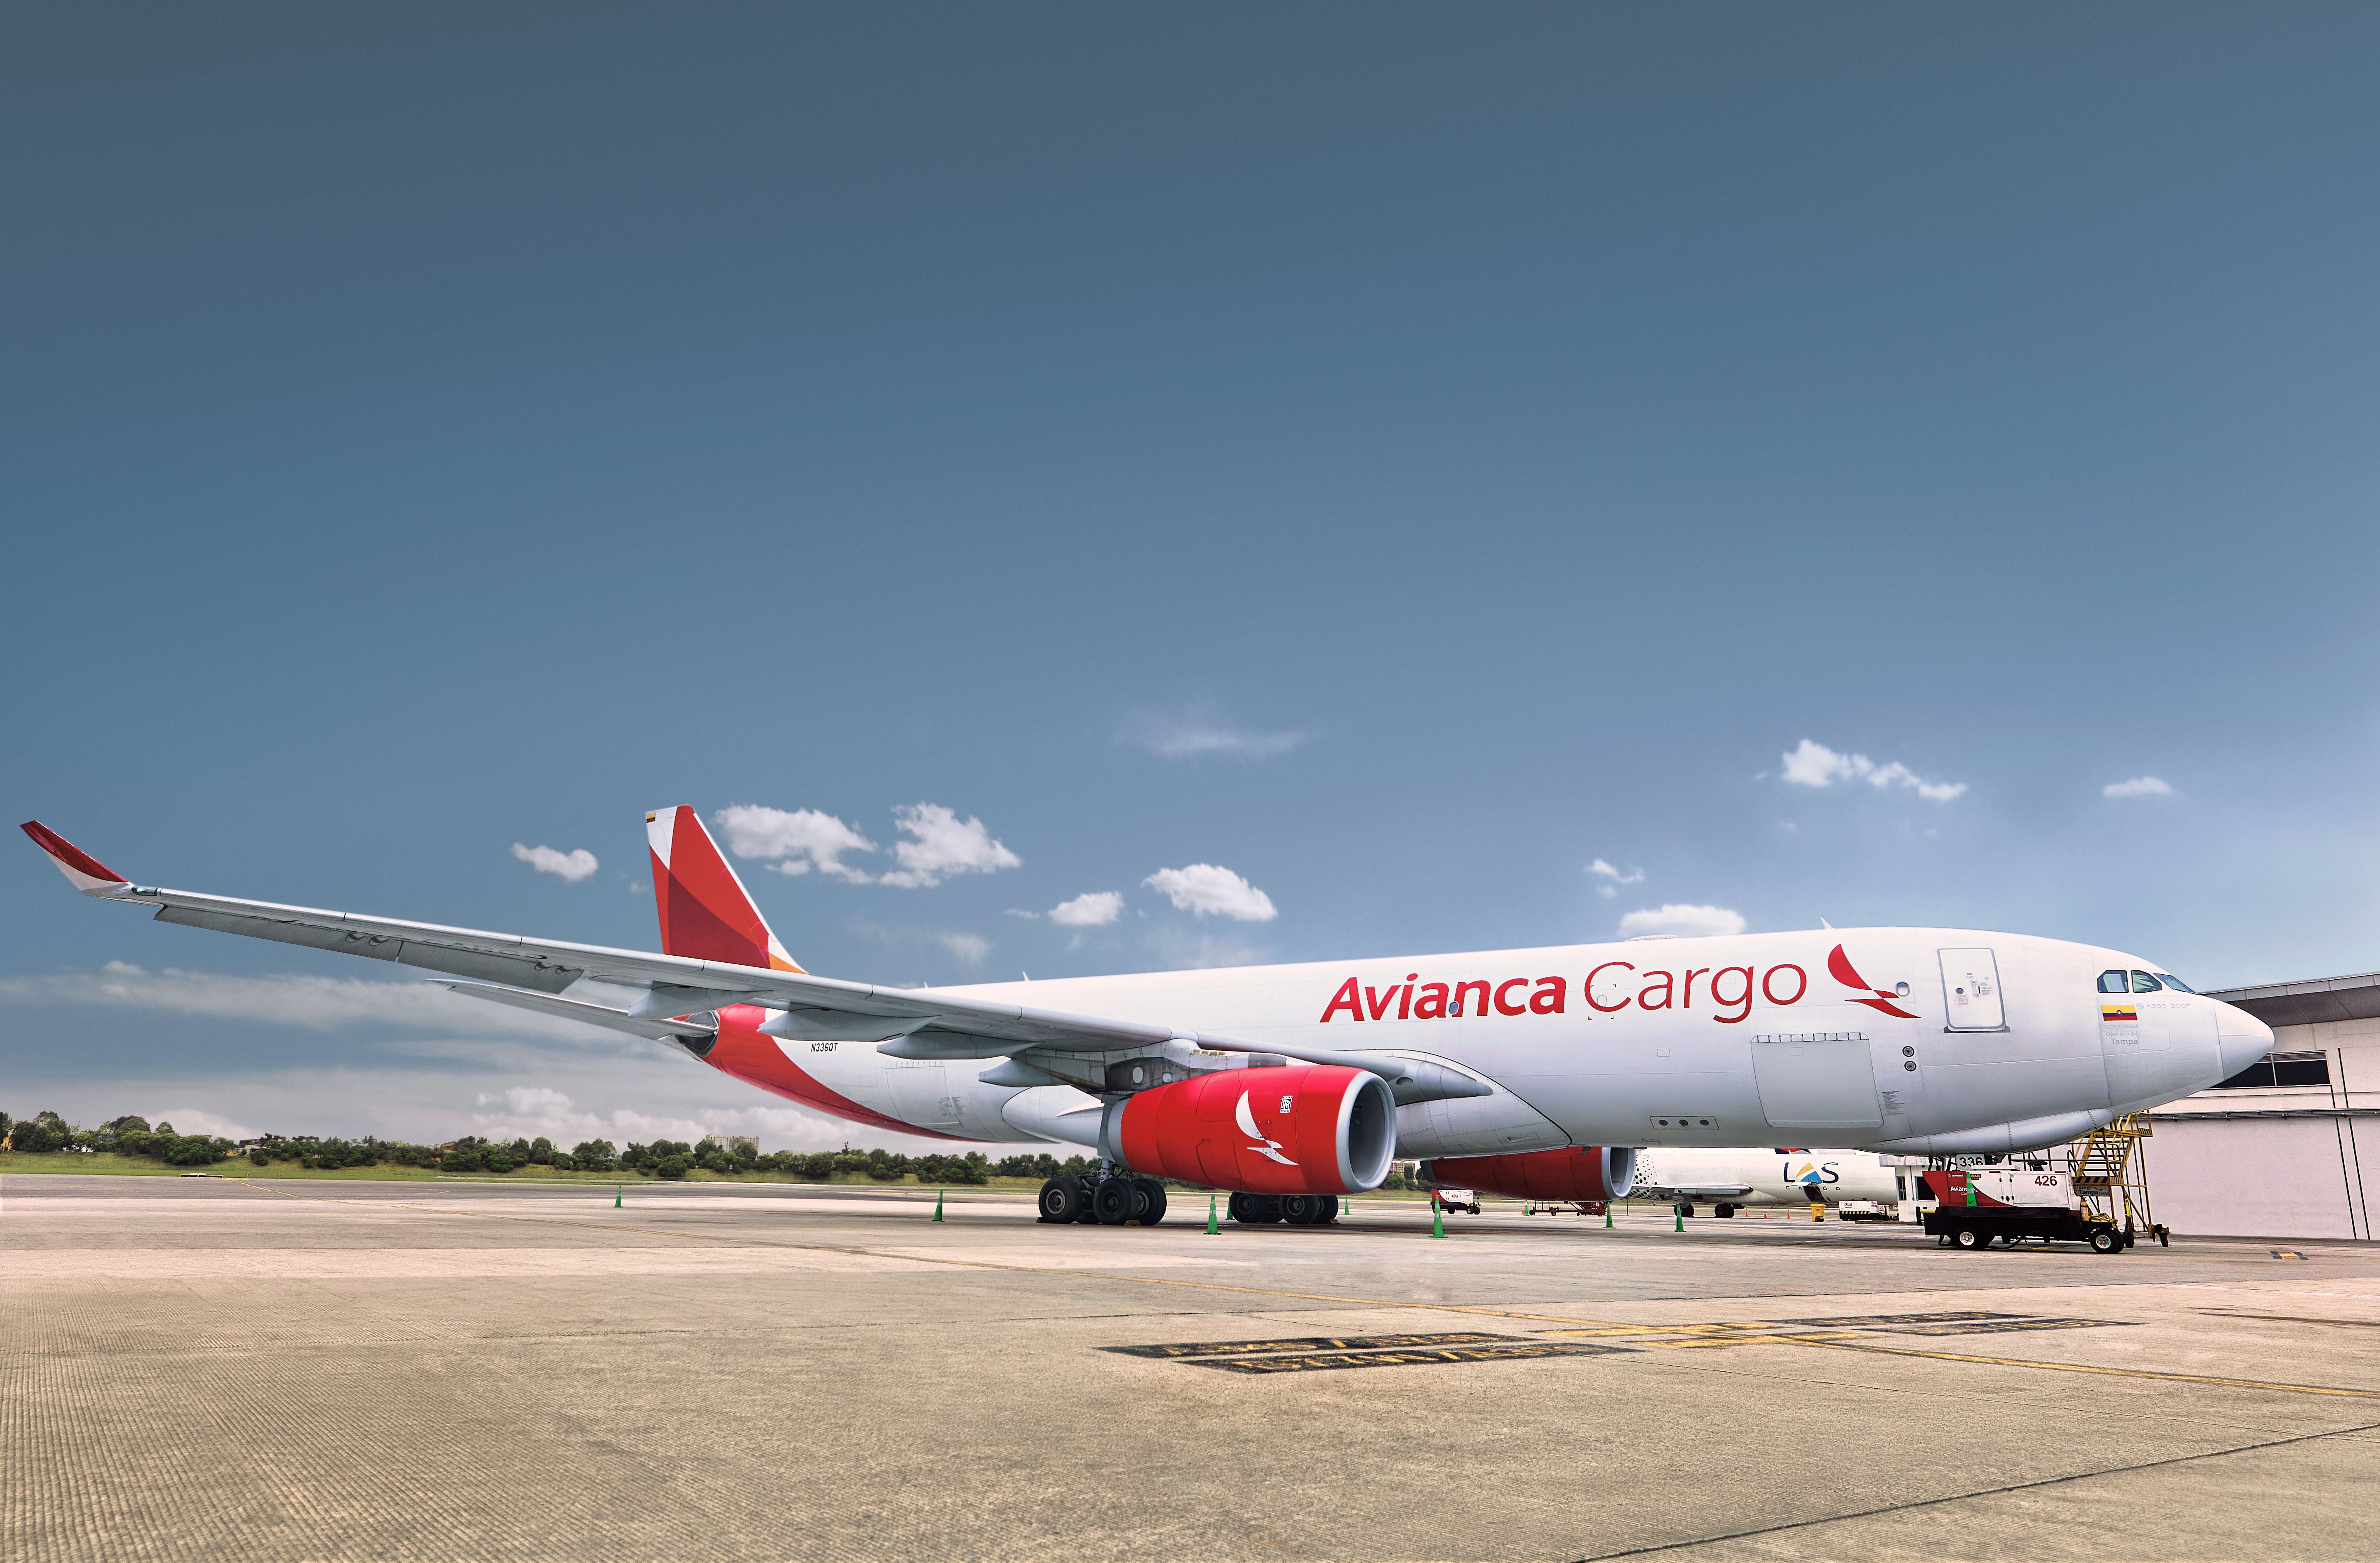 An Avianca Cargo aircraft